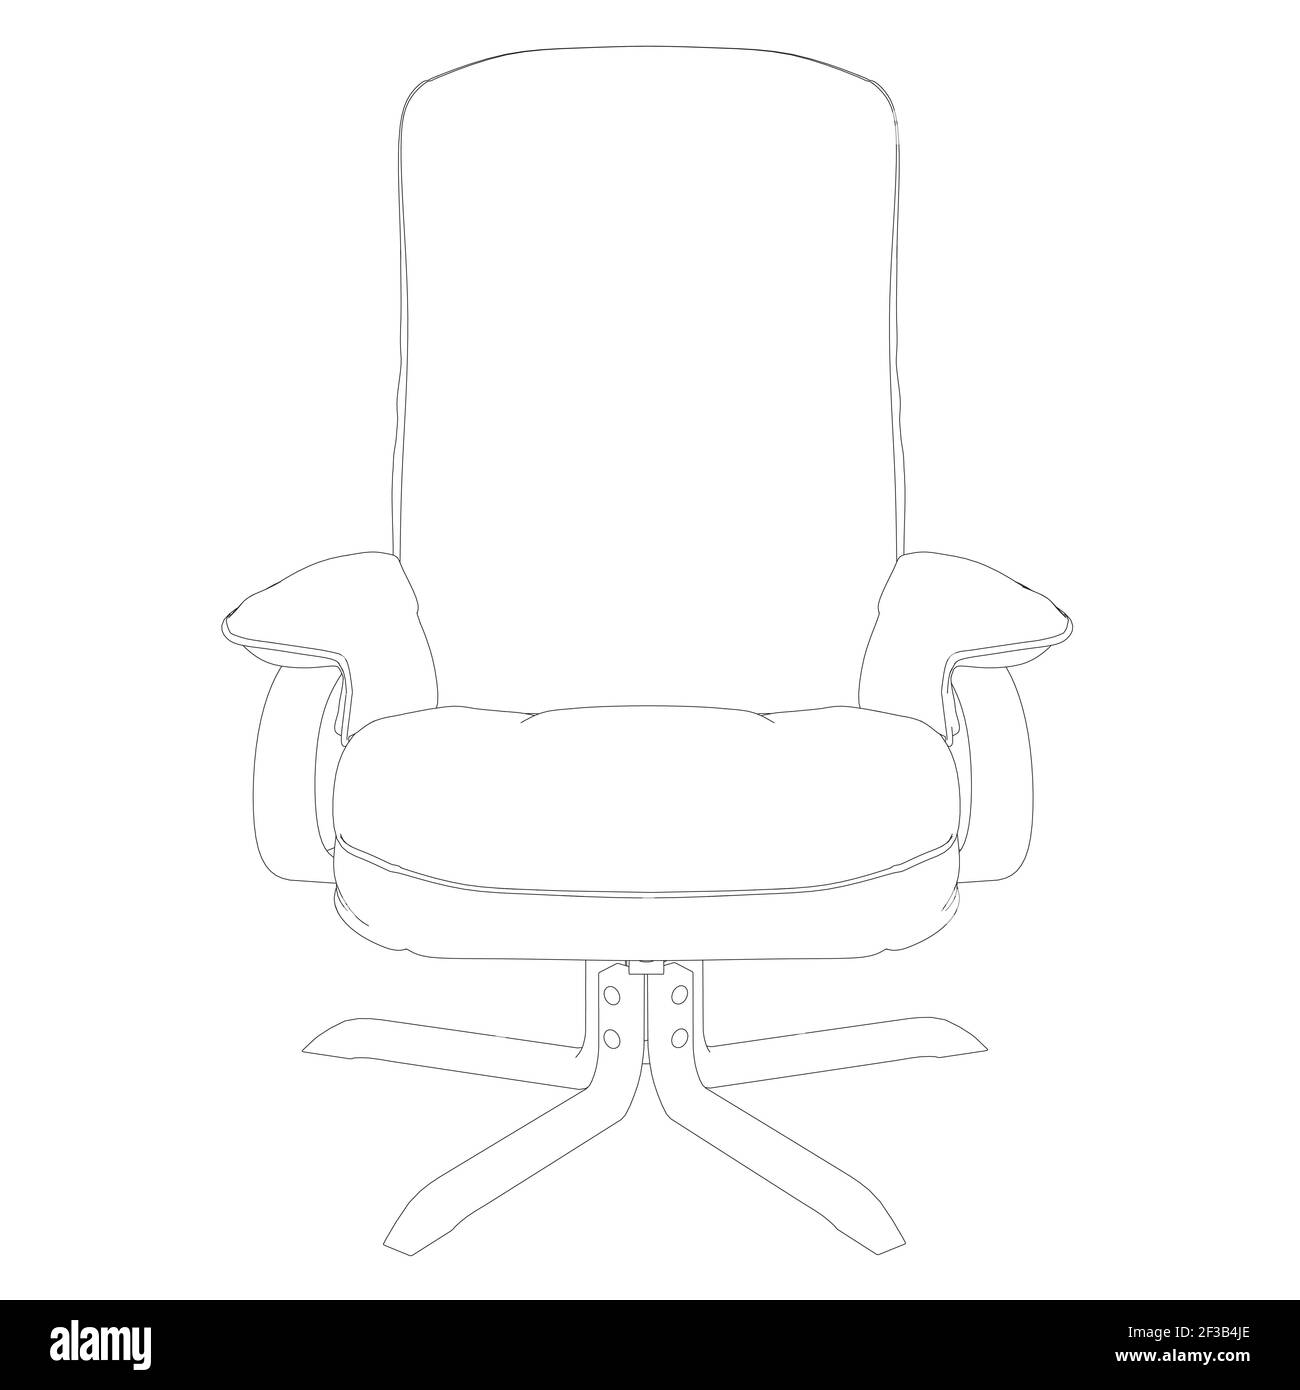 Kontur eines Sessels aus schwarzen Linien isoliert auf weißem Hintergrund. Vorderansicht. Vektorgrafik. Stock Vektor